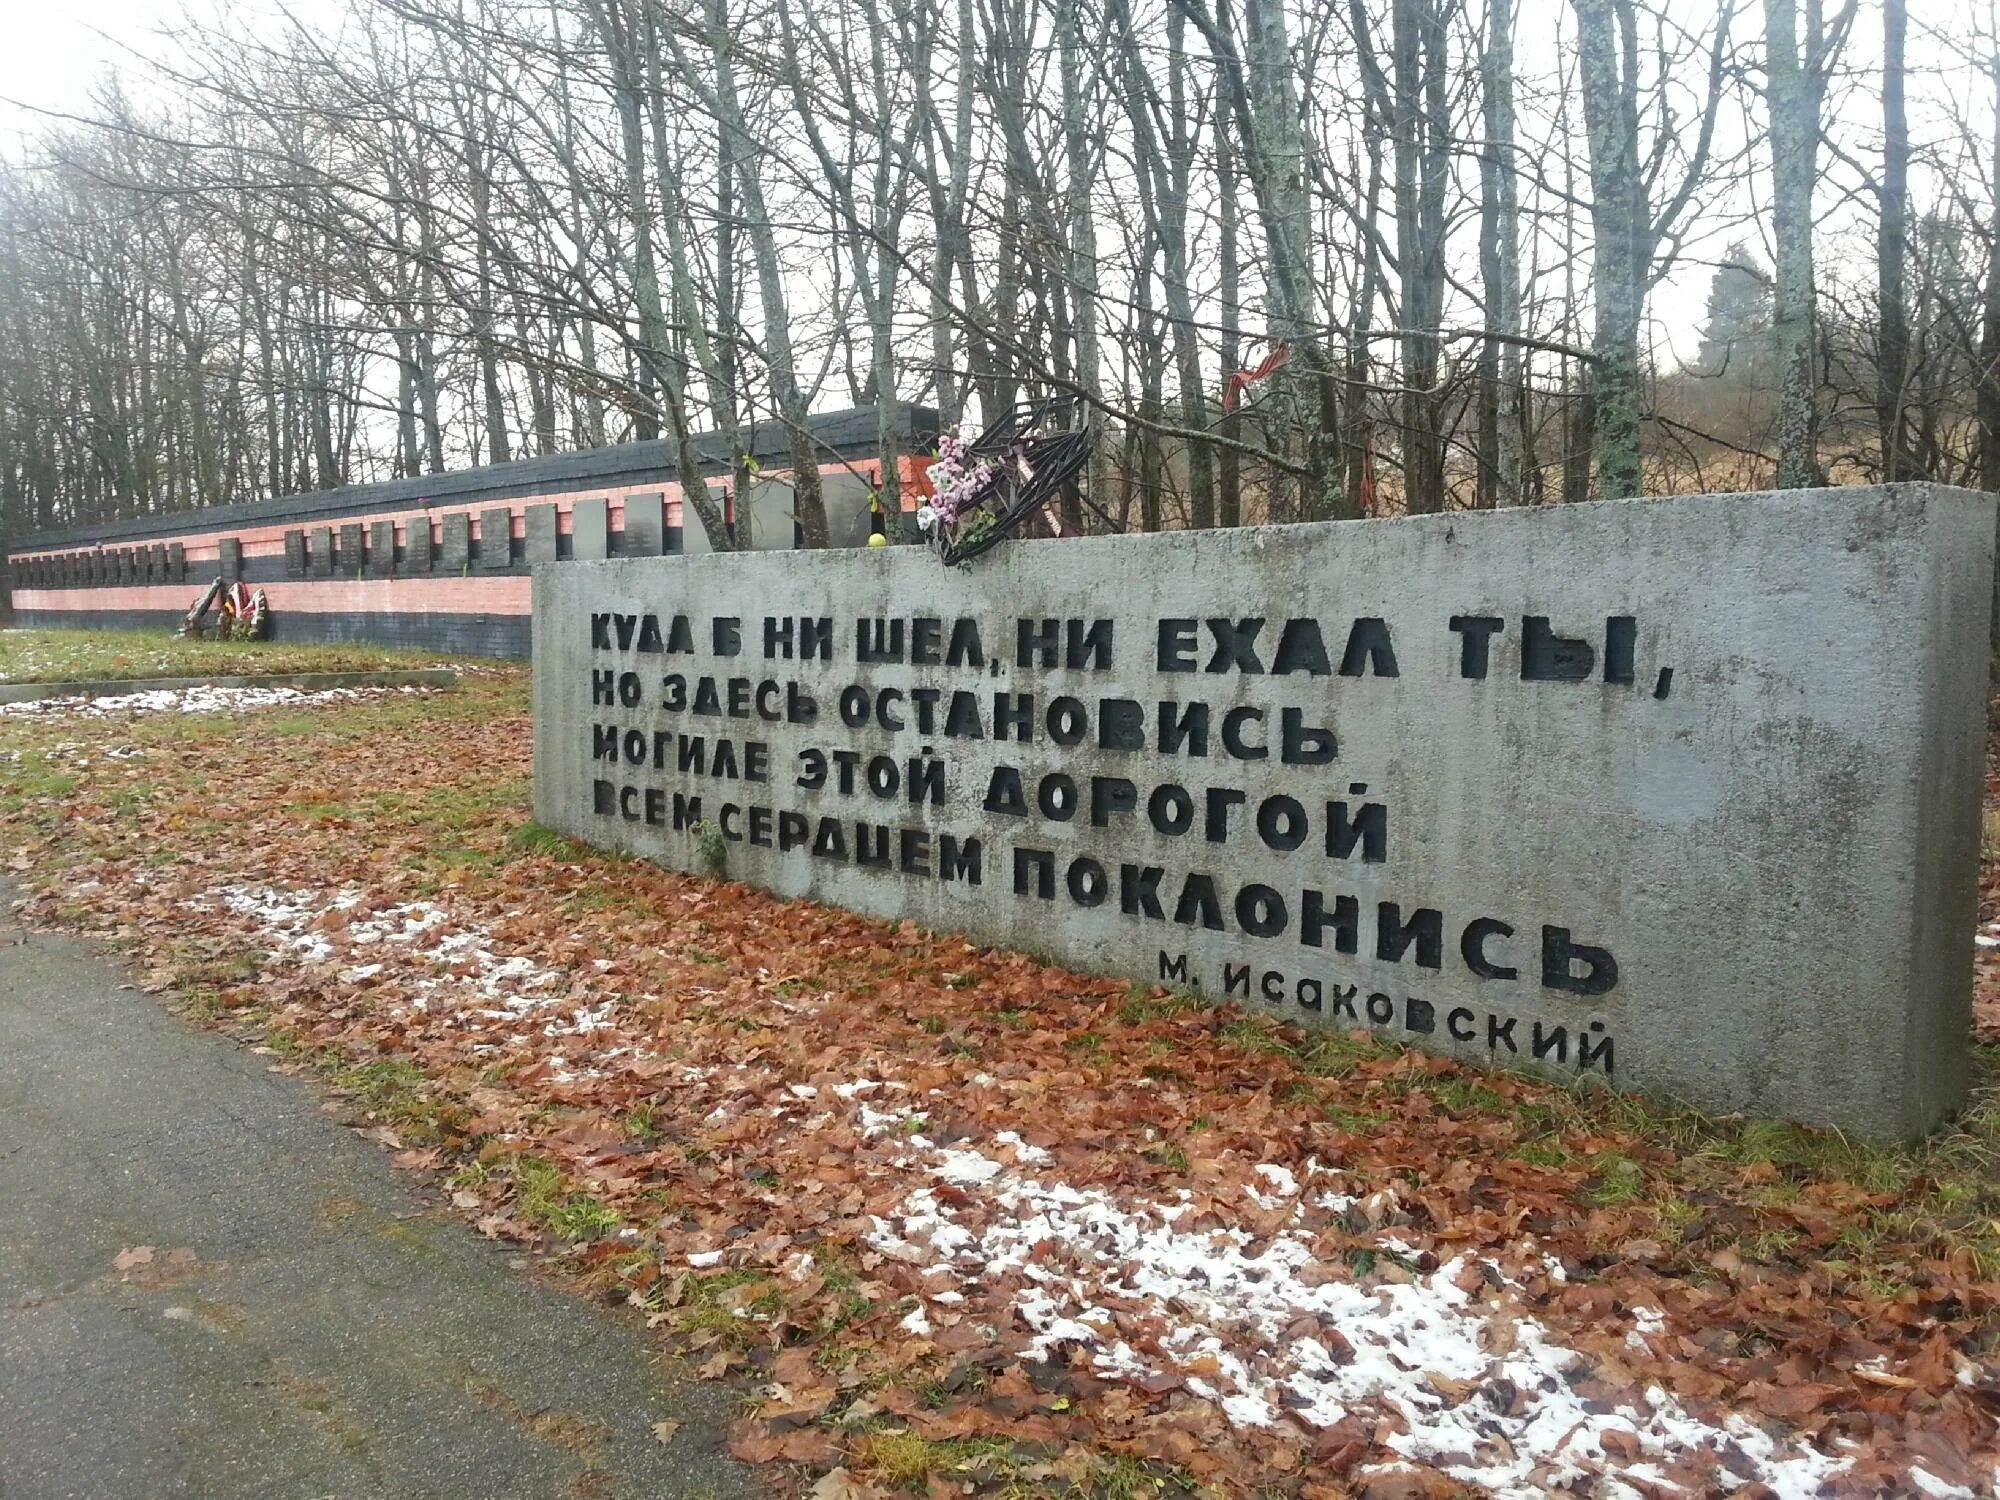 Братское кладбище советских воинов и ленинградцев. Здесь похоронен красноармеец. М Исаковский здесь похоронен красноармеец. Здесь похоронен красноармеец стих.